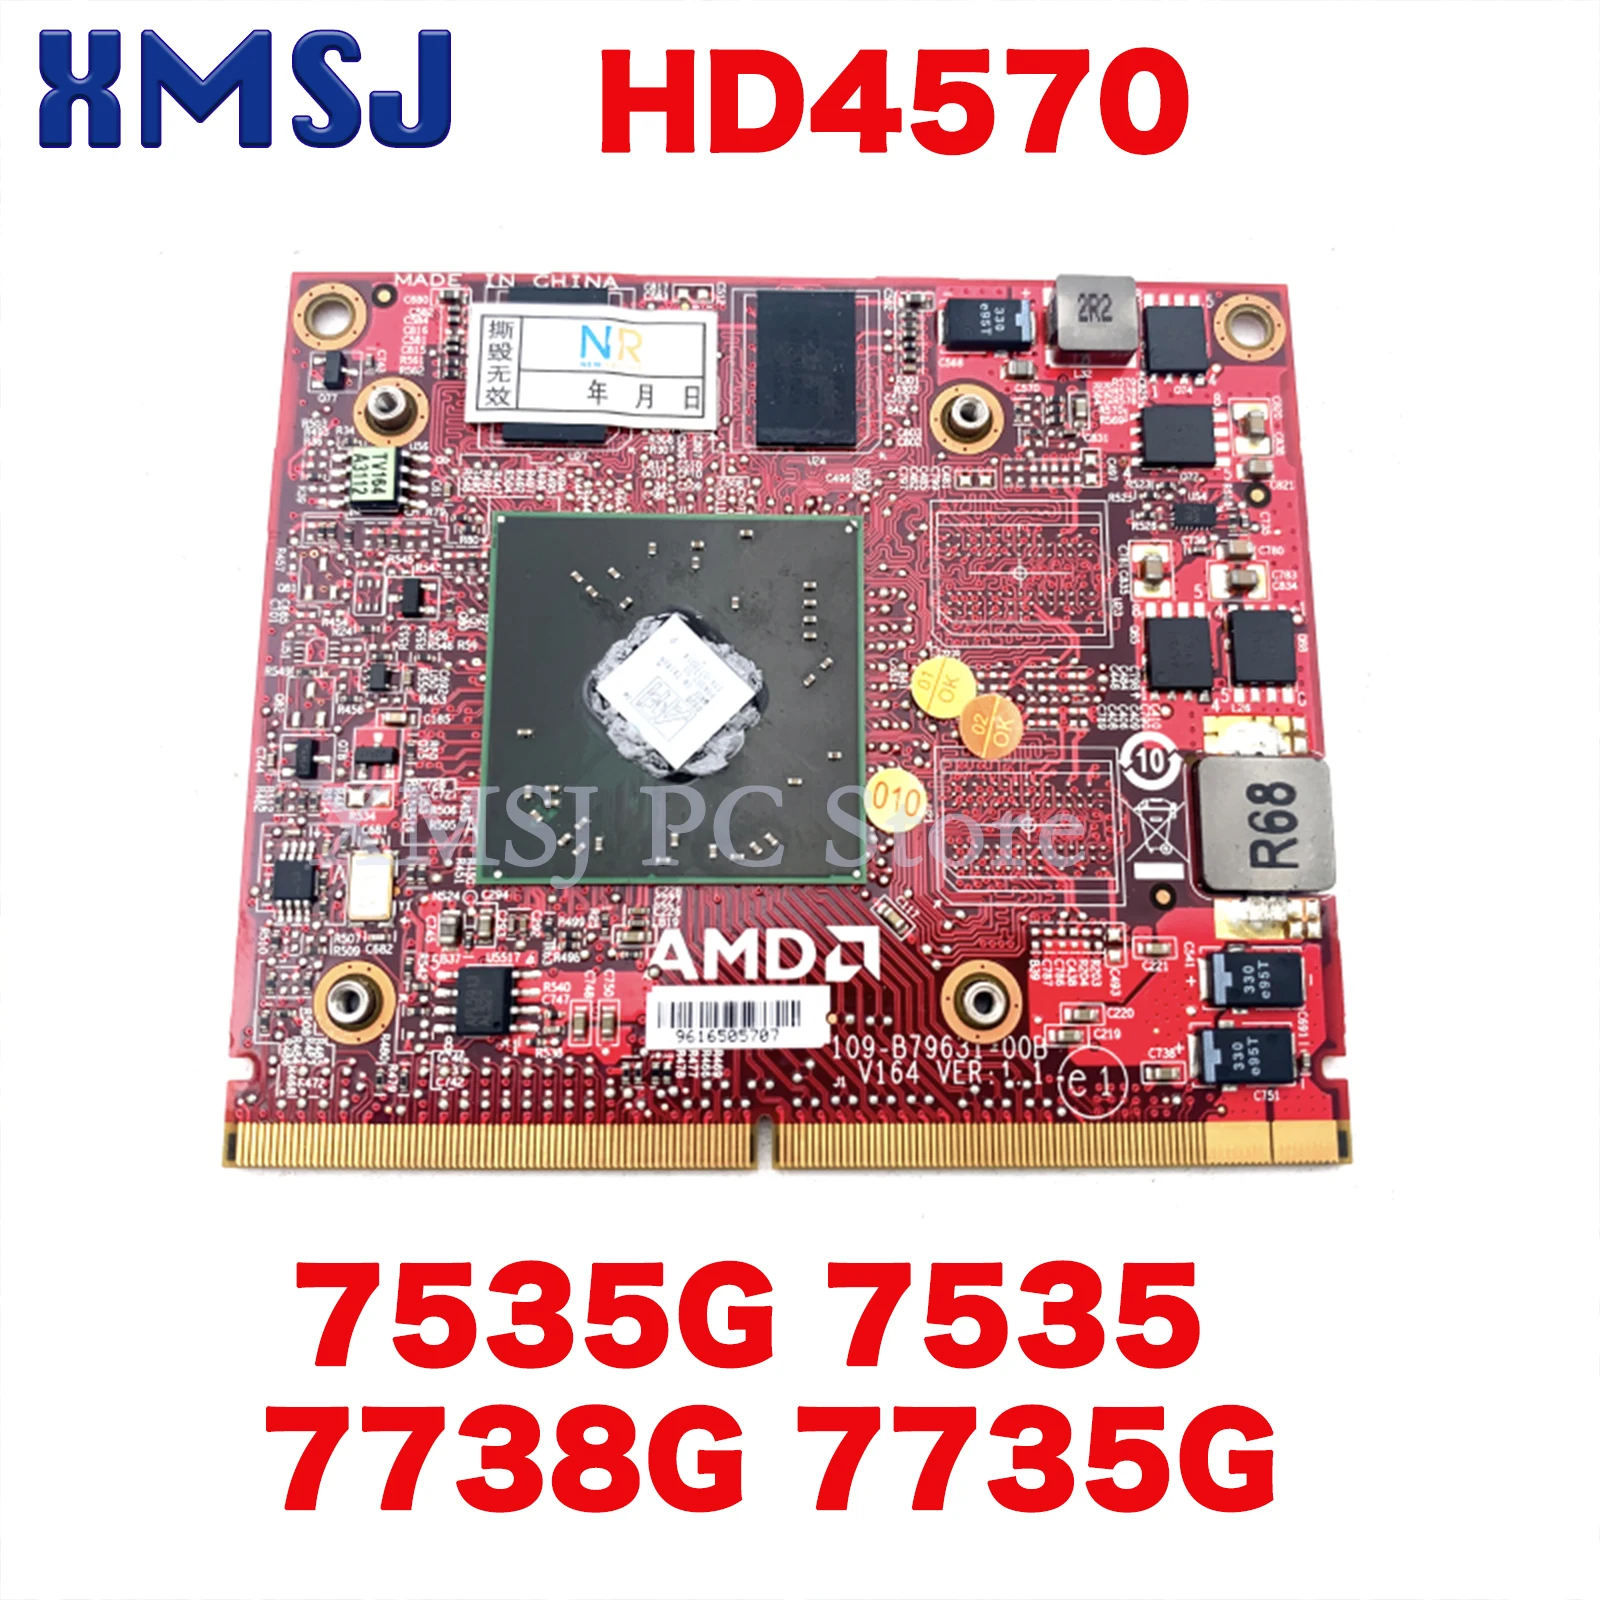 

XMSJ VG.M9206.002 109-B79631-00B Video Card For Acer 7535G 7535 7738G 7735G HD4570 512MB